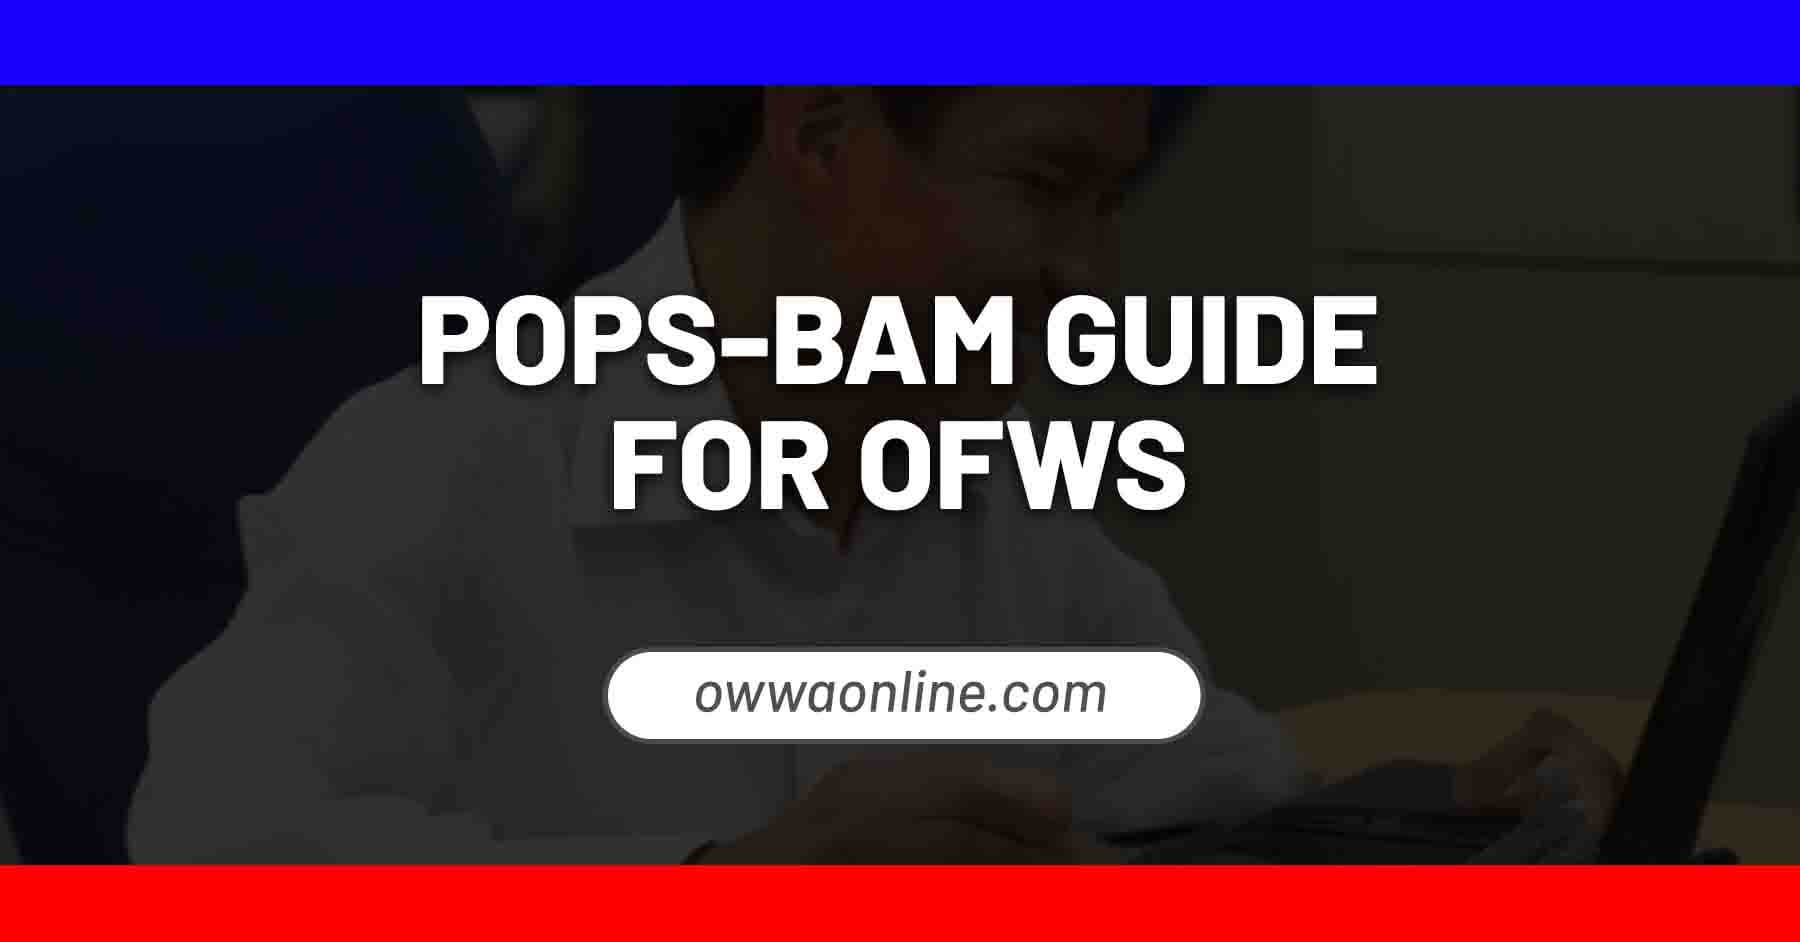 pops-bam guide poea balik manggagawa processing system online